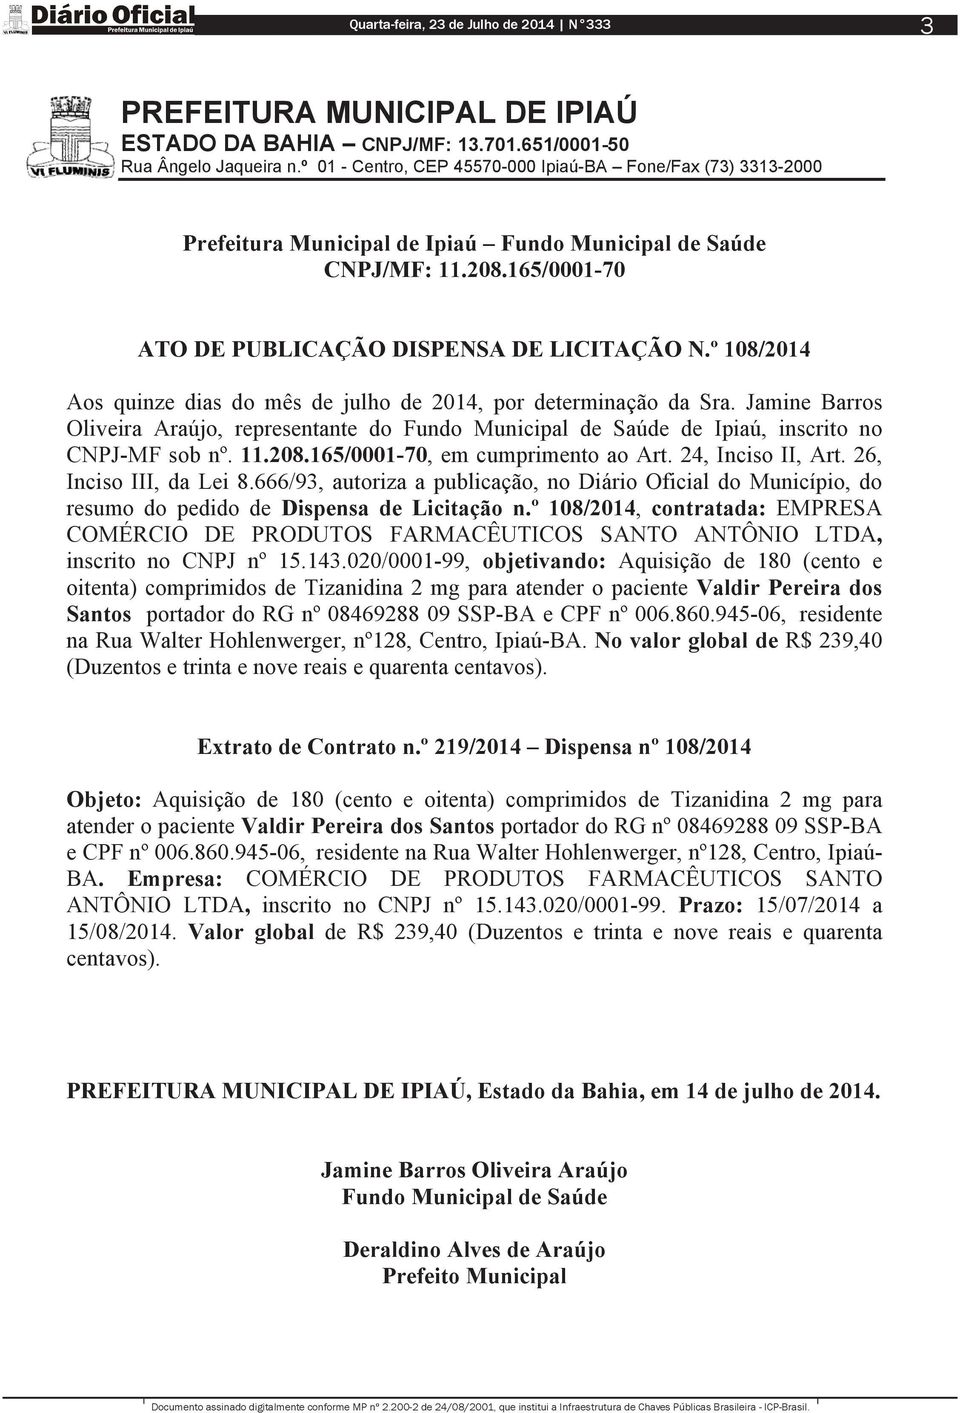 Jamine Barros Oliveira Araújo, representante do Fundo Municipal de Saúde de Ipiaú, inscrito no CNPJ-MF sob nº. 11.208.165/0001-70, em cumprimento ao Art. 24, Inciso II, Art. 26, Inciso III, da Lei 8.